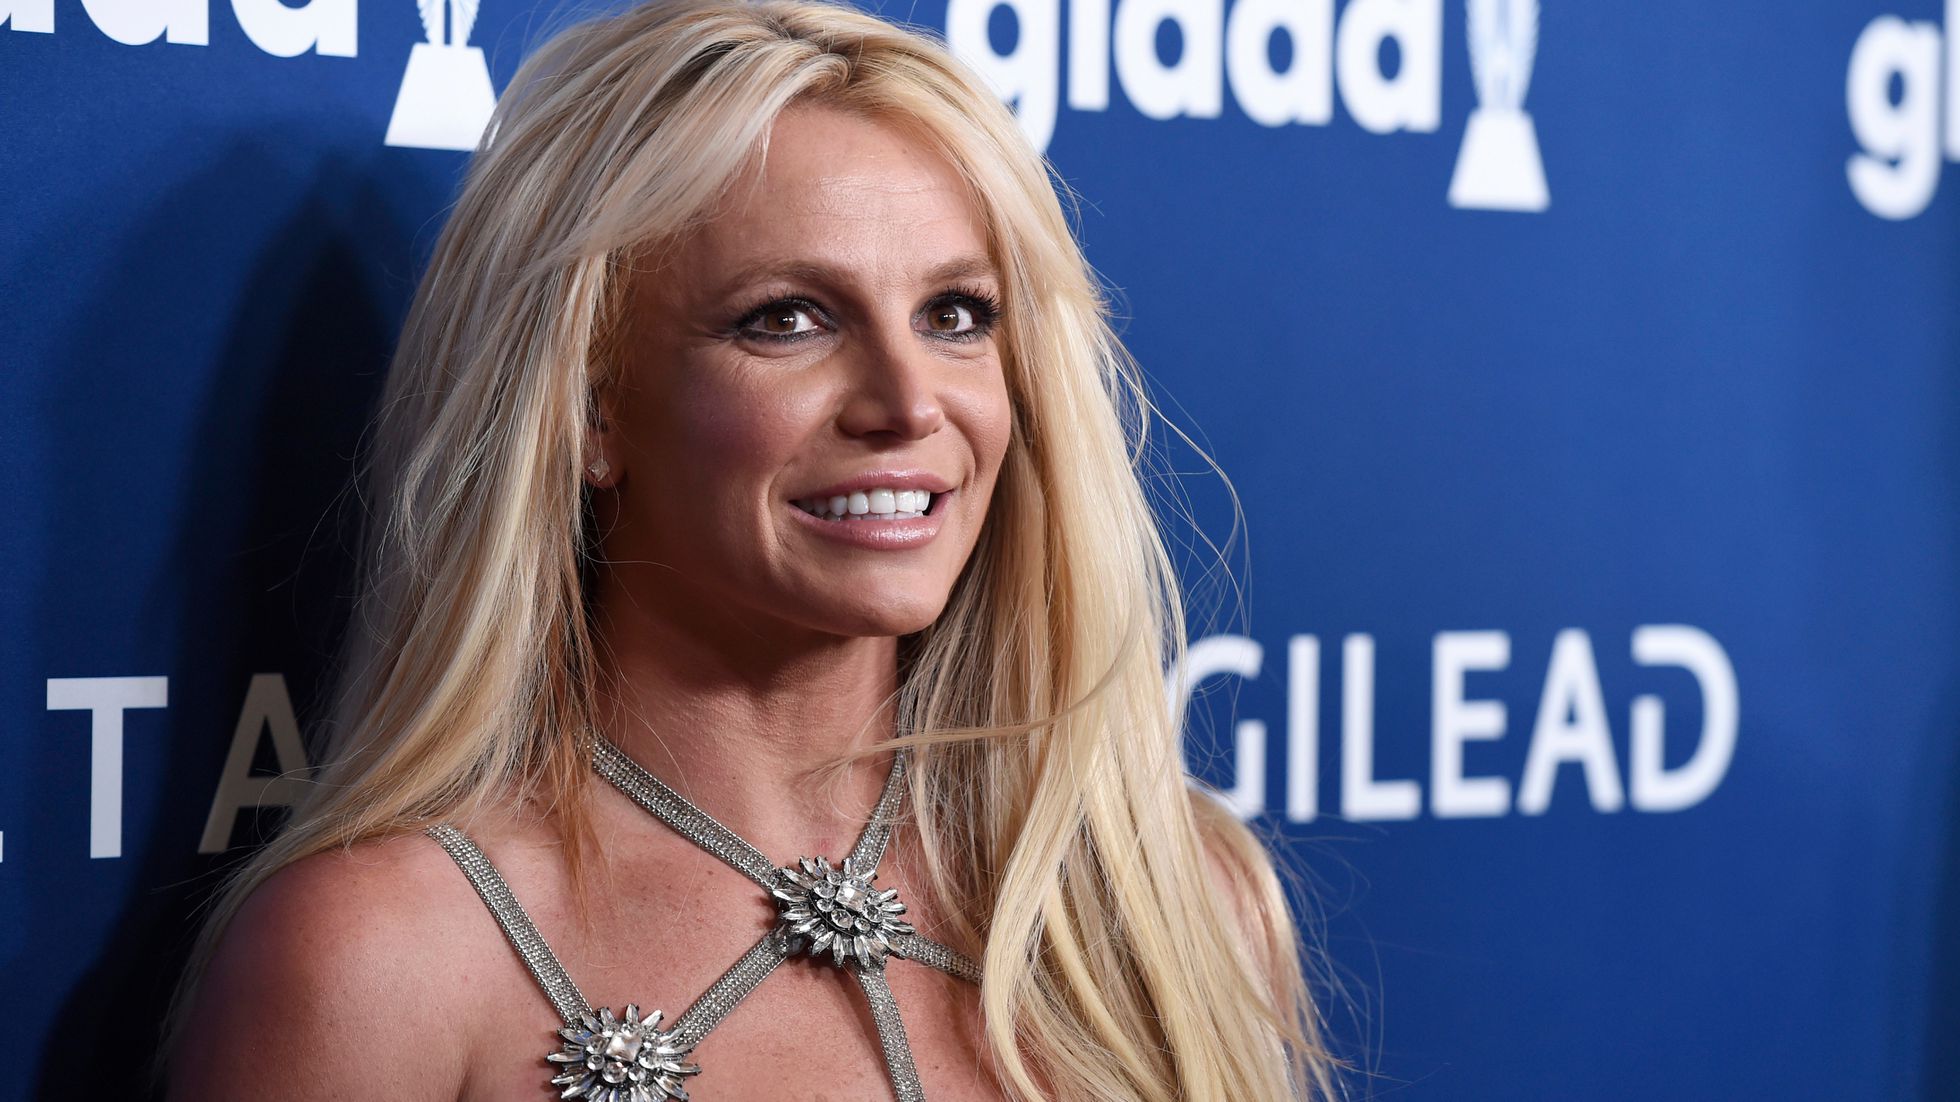 Britney Spears ja no vol saber res més d'ella i el deixa de seguir a Instagram